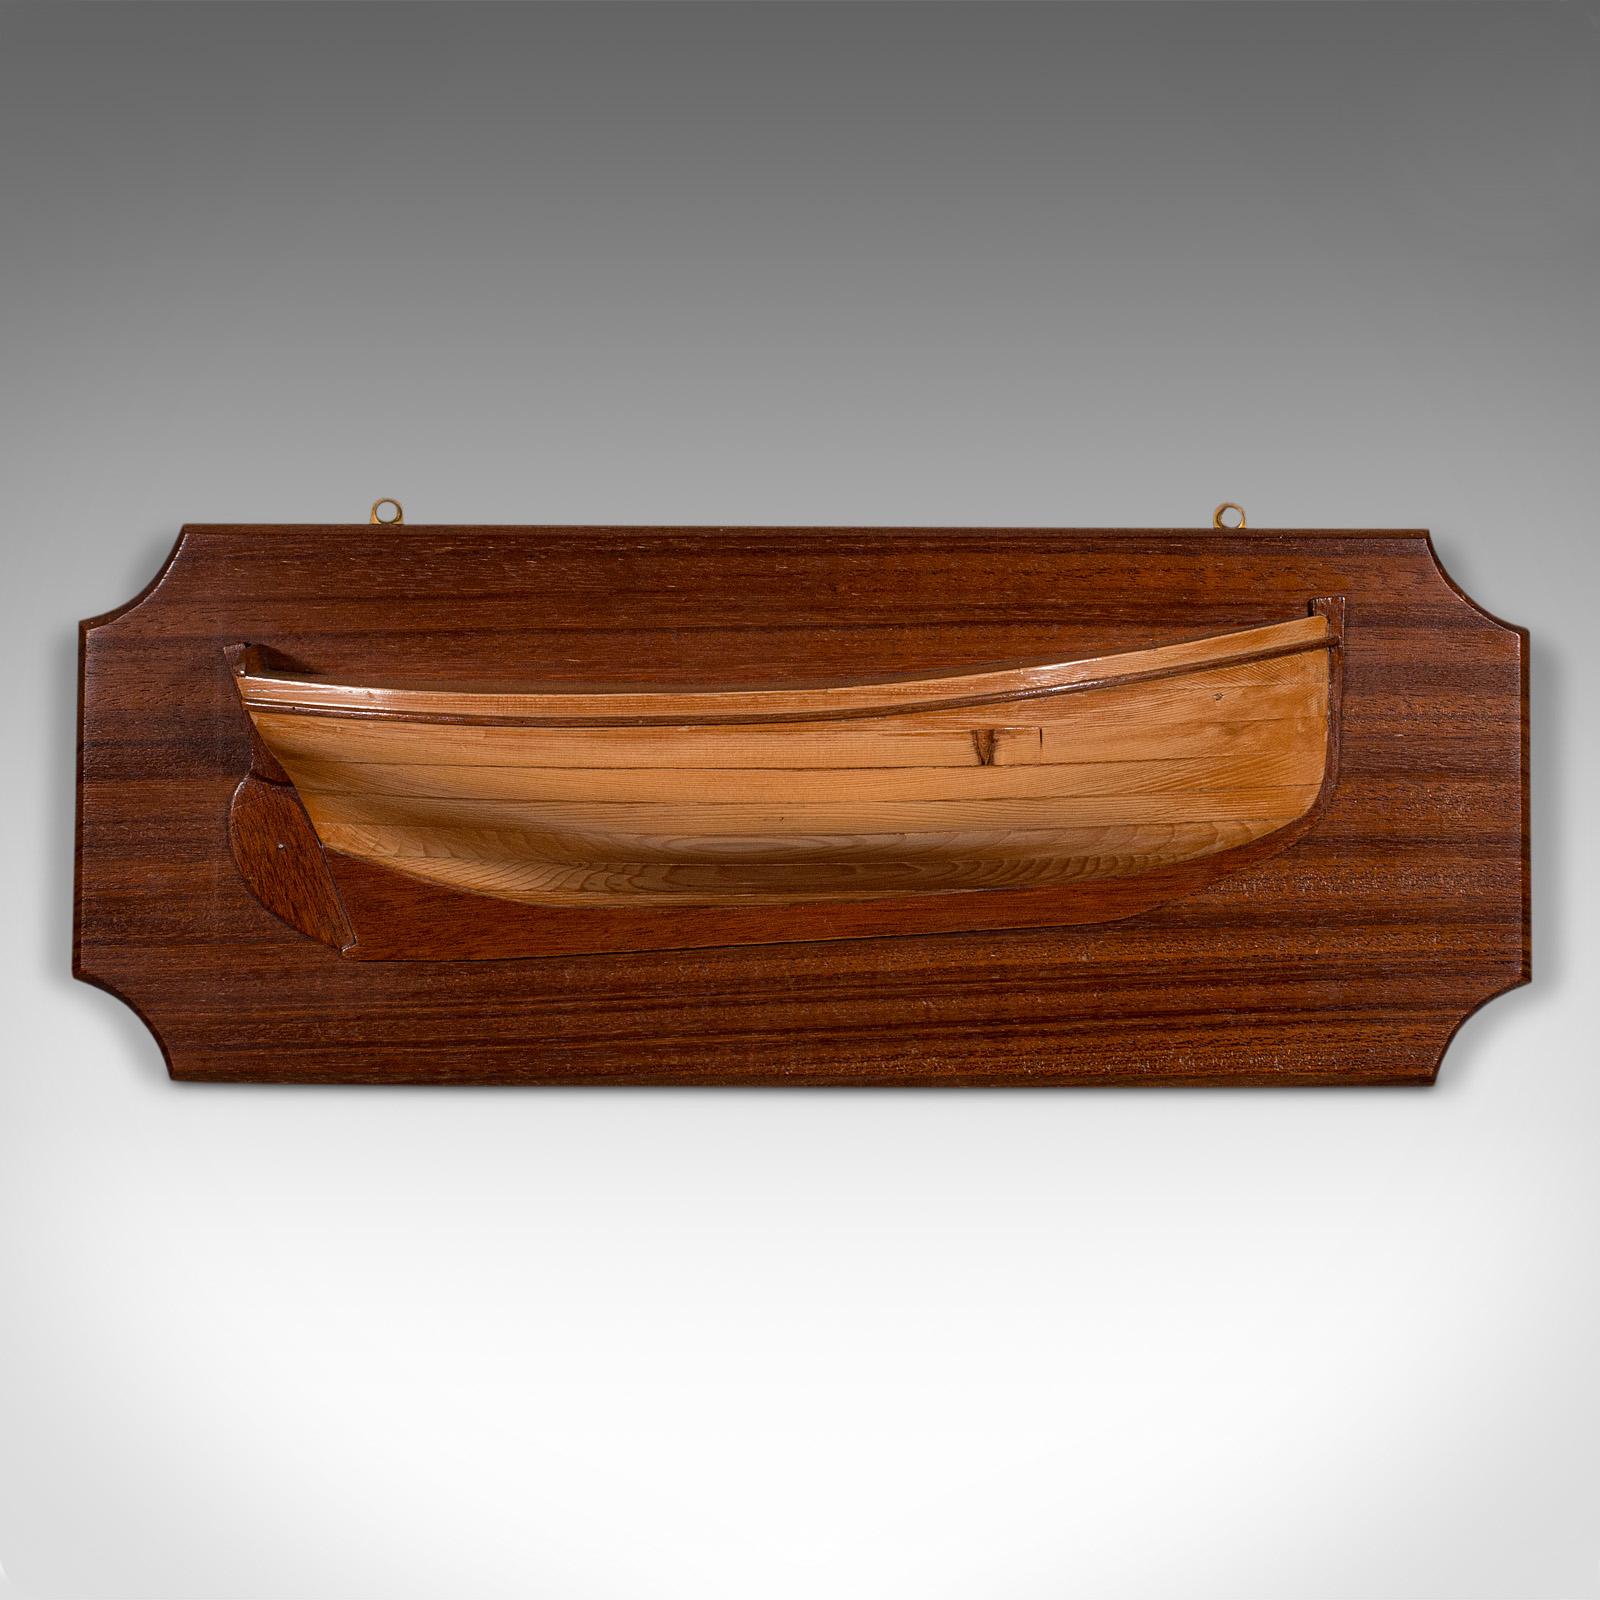 Il s'agit d'une plaque de demi-coque d'un bateau ancien. Modèle maritime décoratif anglais, en acajou et en pitchpin, datant de la période édouardienne, vers 1910.

Doté d'une belle figuration et d'un savoir-faire artisanal
Présente une patine